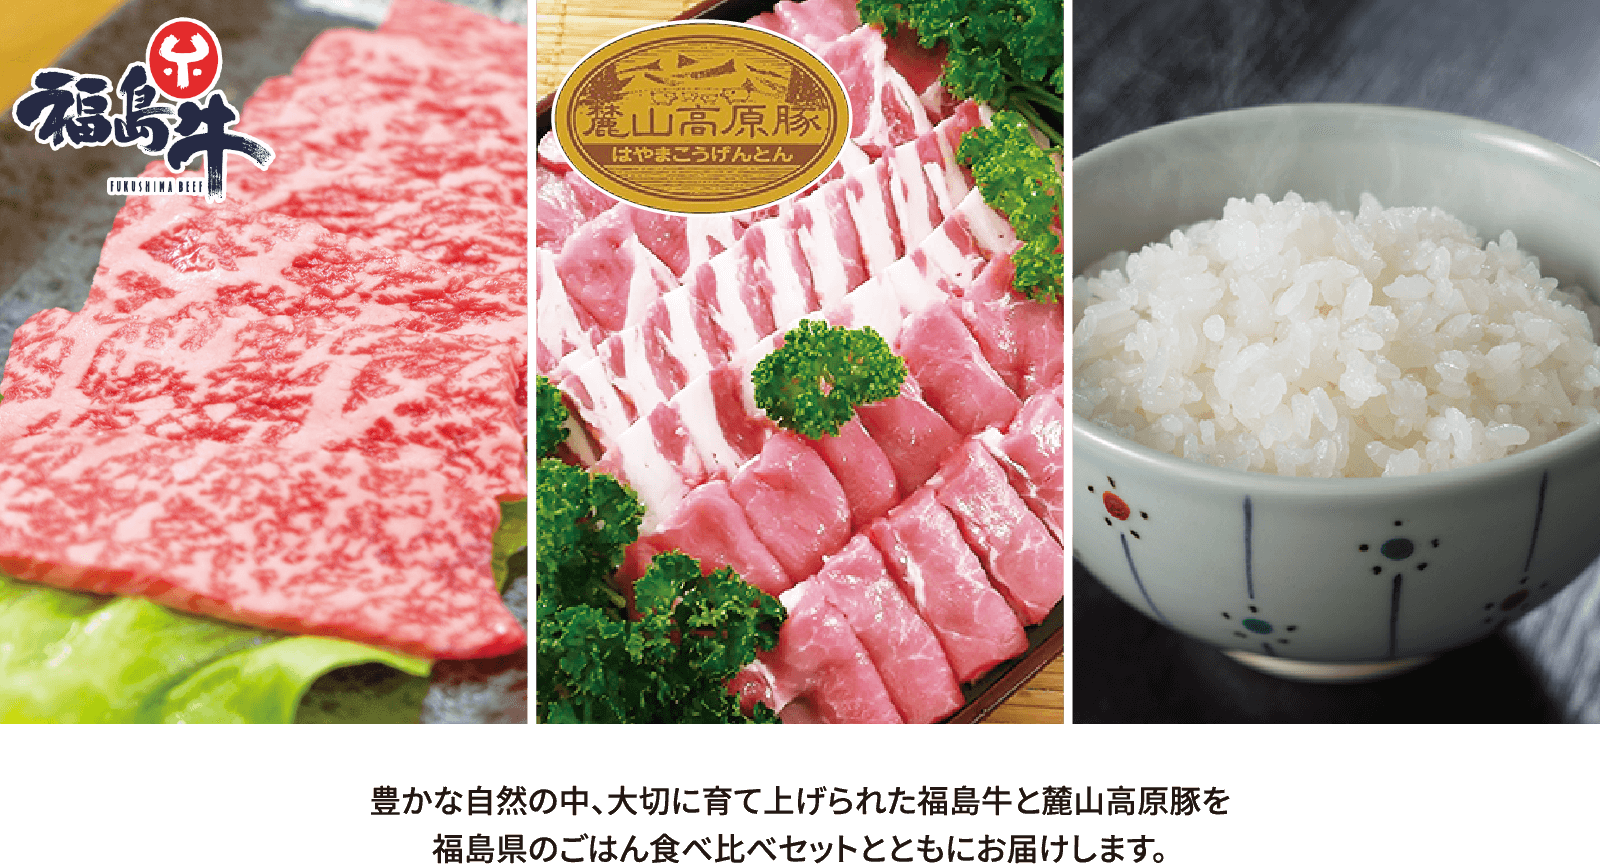 豊かな自然の中、大切に育て上げられた福島牛と麓山高原豚を福島県のごはん食べ比べセットとともにお届けします。